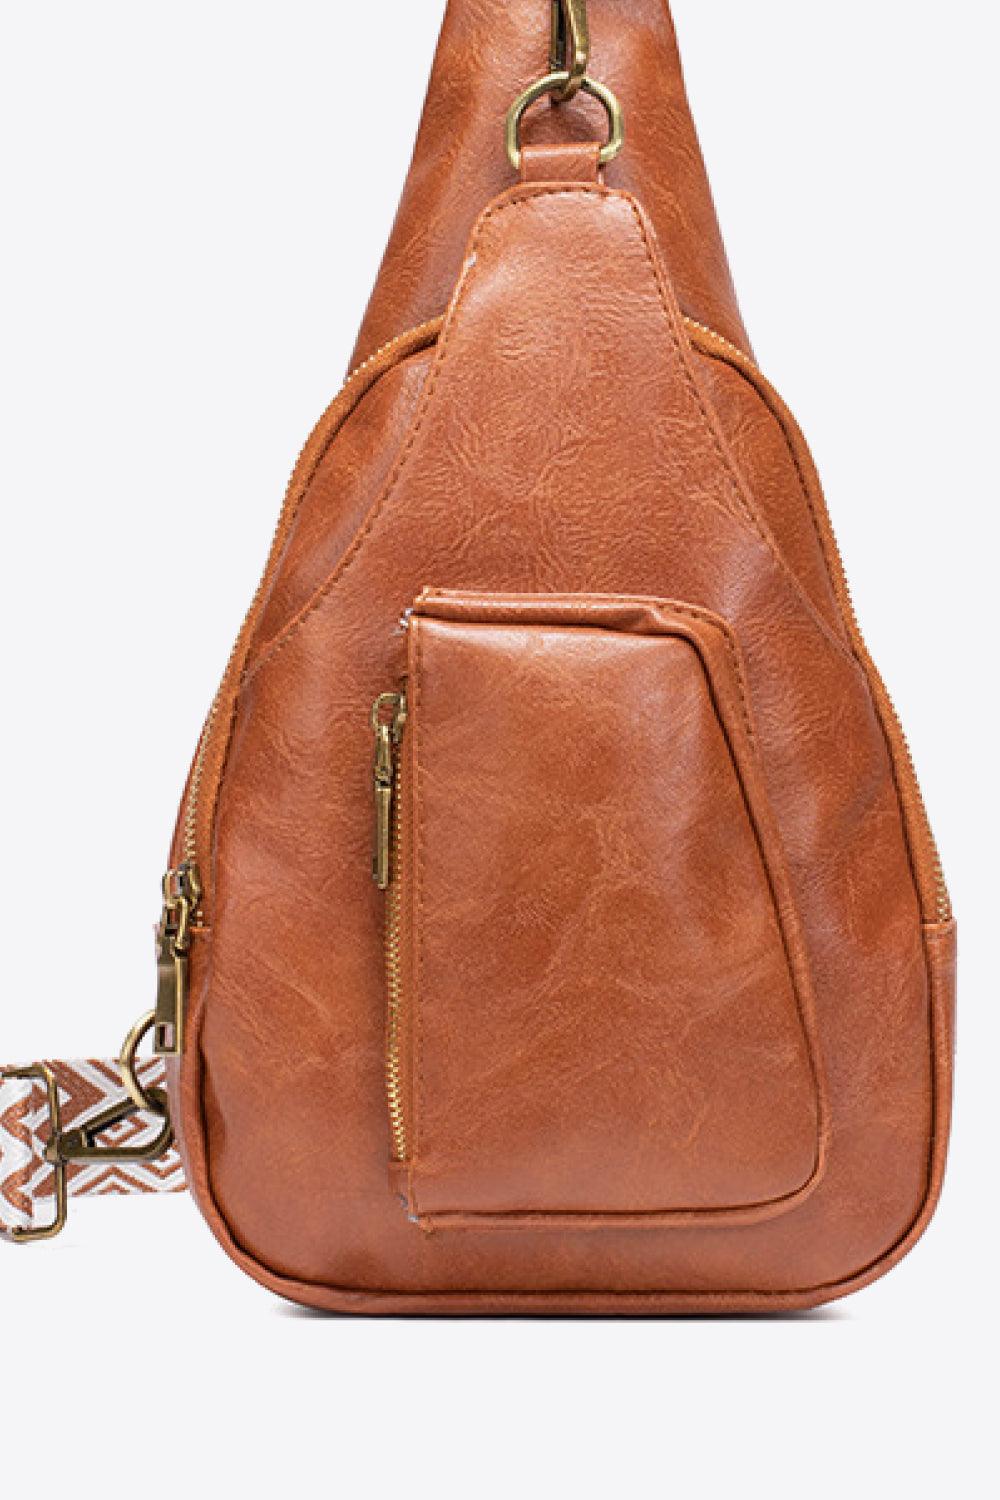 PU Leather Stylish Sling Bag with handle and adjustable shoulder strap for  Women/Trendy Branded Sling Bag for Girls Latest(HNDL SLNG)